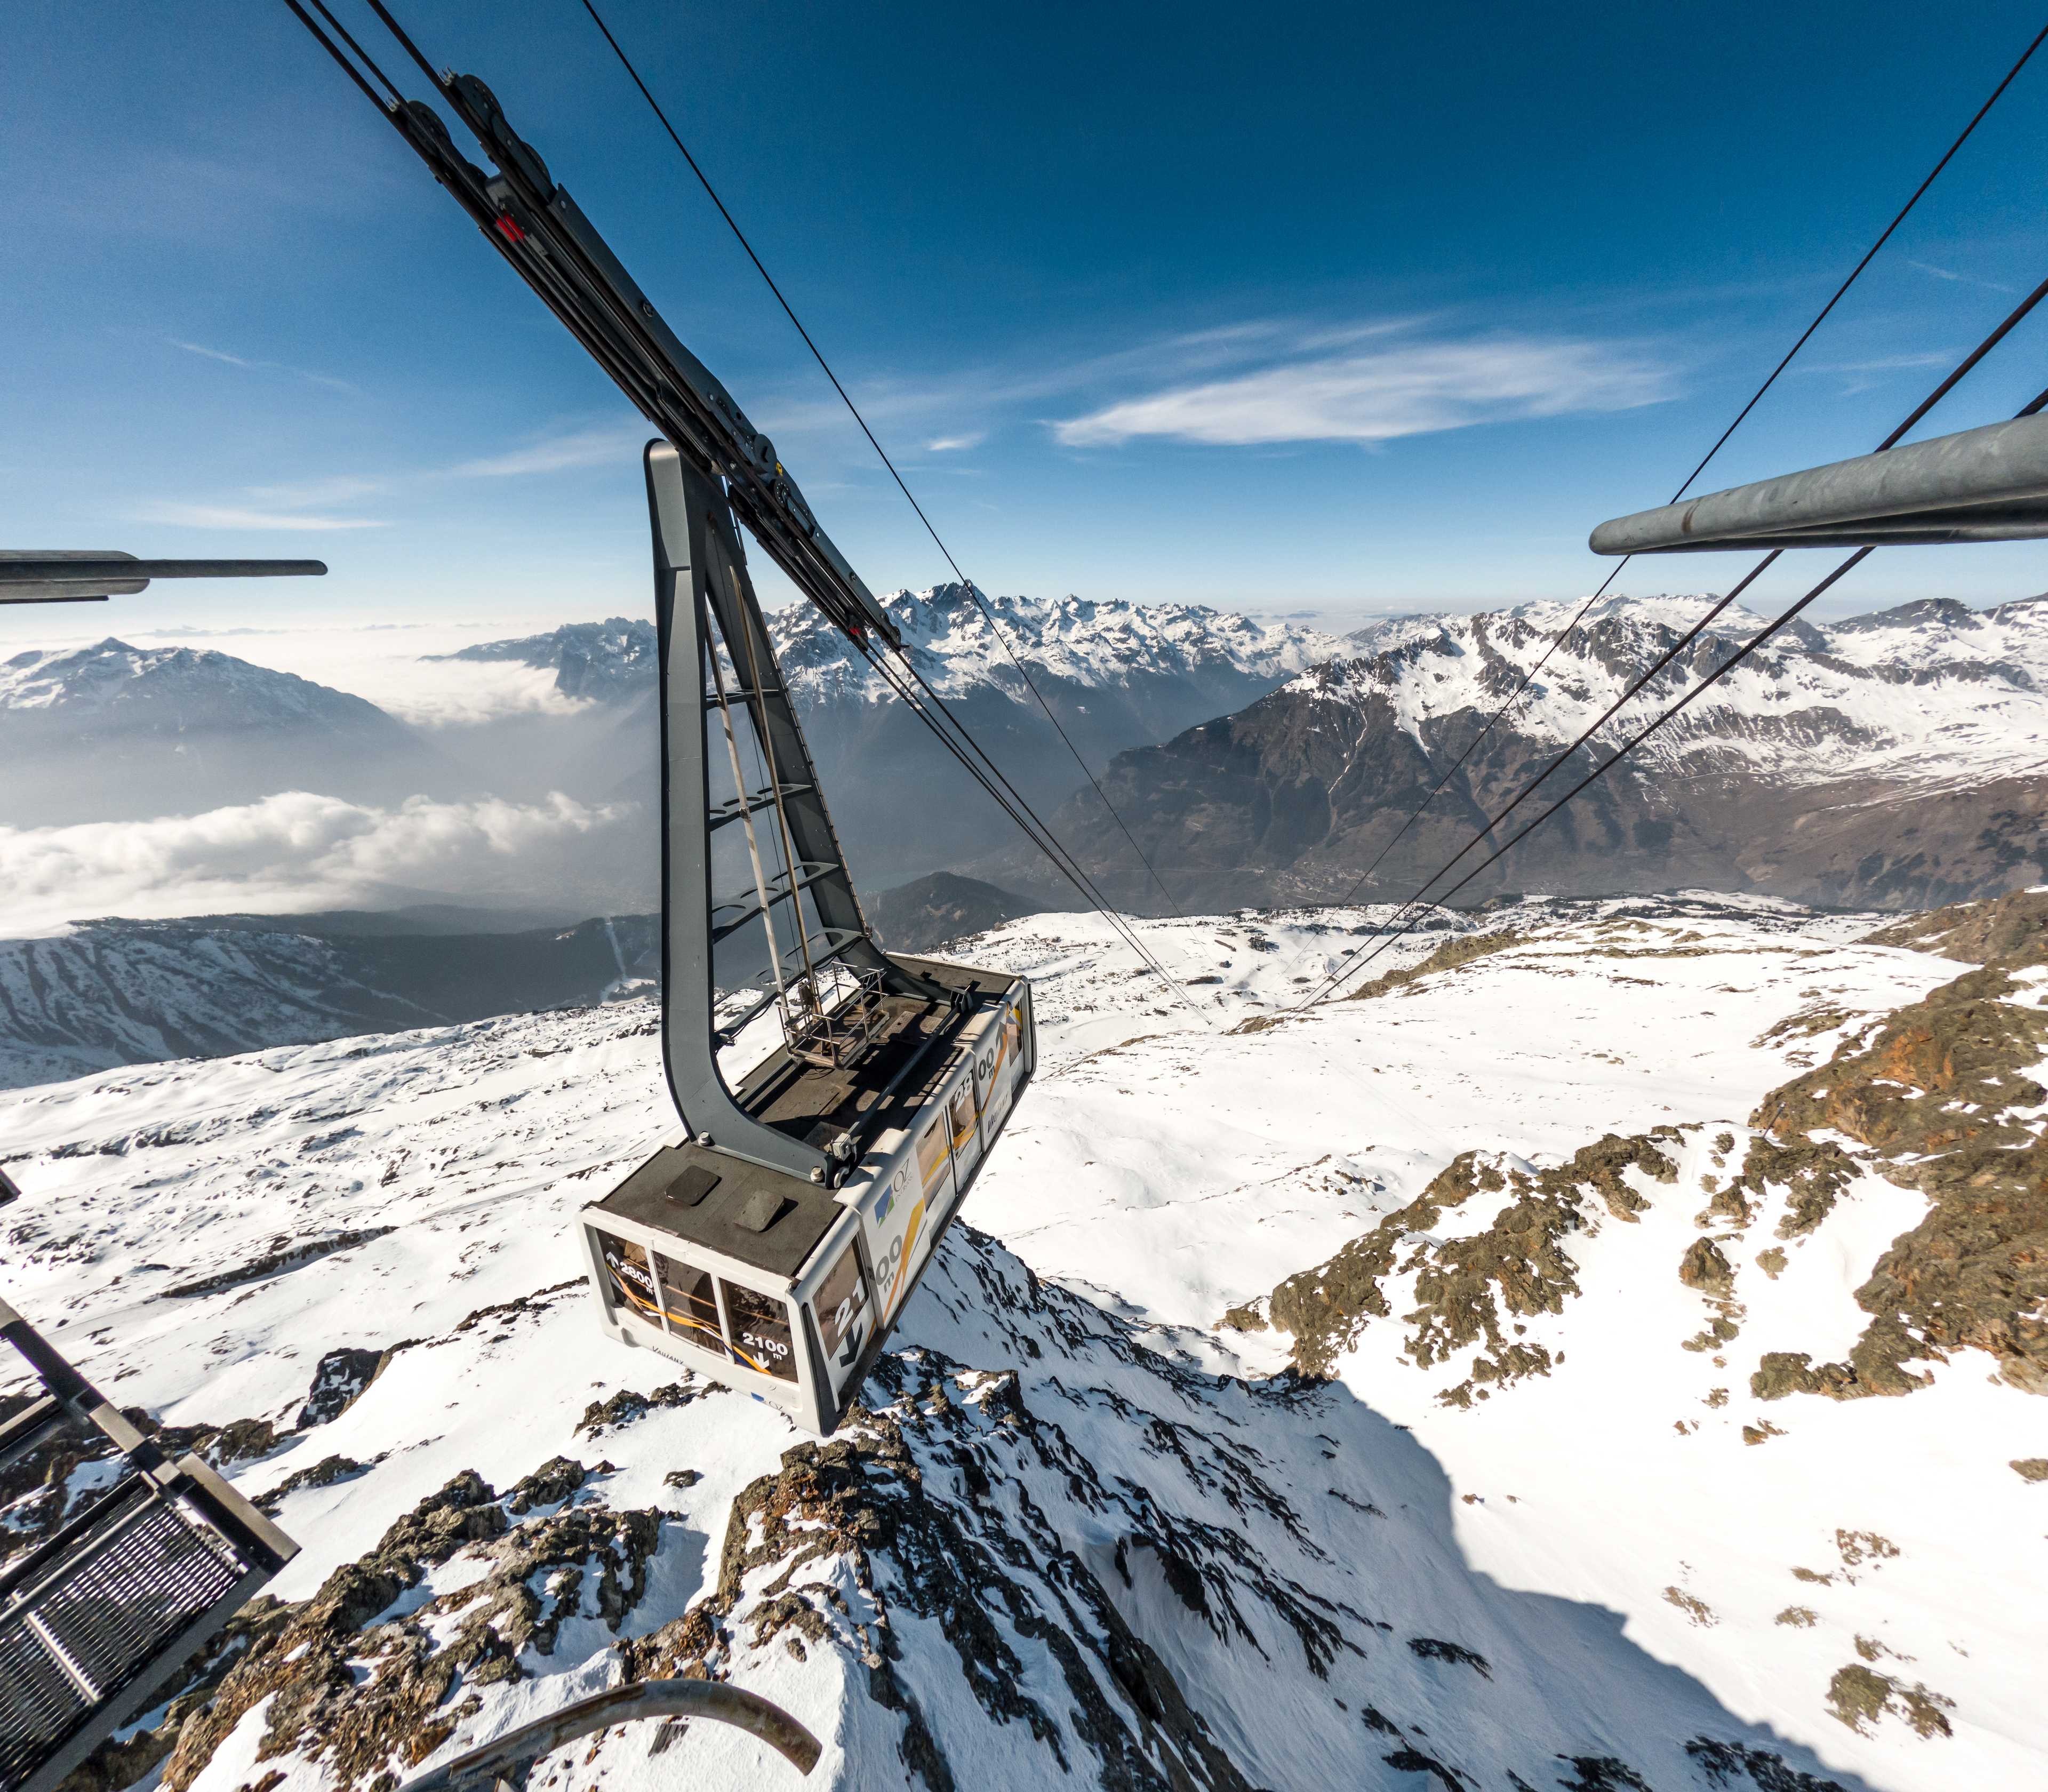 Alpette-Dôme des Rousses aerial tramway, Vaujany, Alpe d'Huez